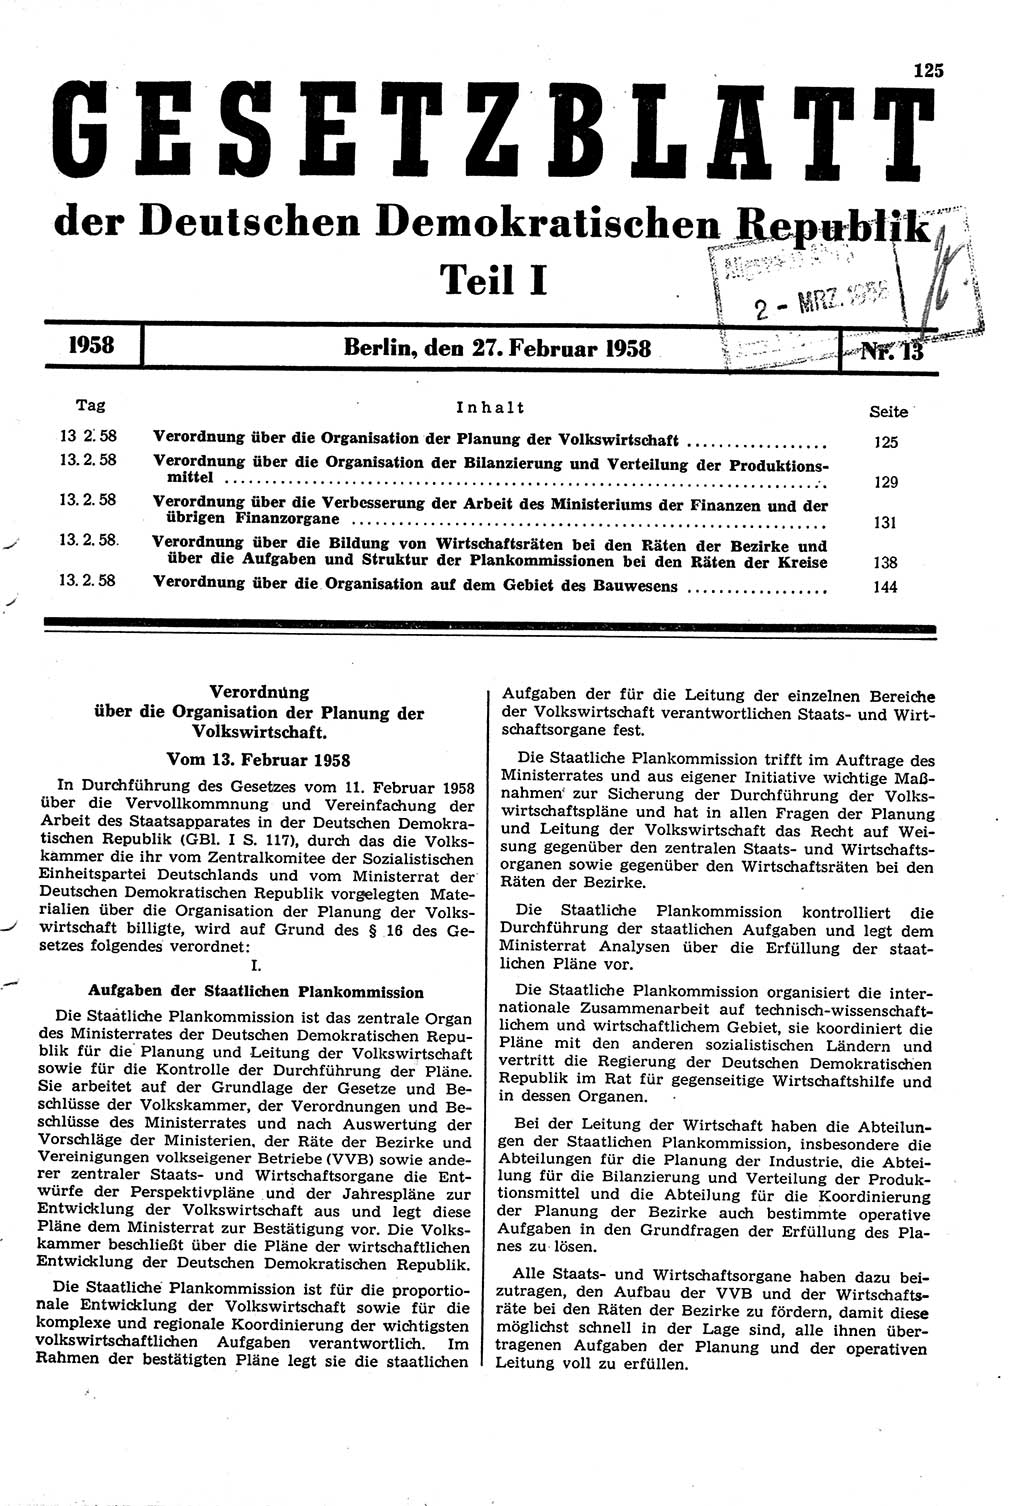 Gesetzblatt (GBl.) der Deutschen Demokratischen Republik (DDR) Teil Ⅰ 1958, Seite 125 (GBl. DDR Ⅰ 1958, S. 125)